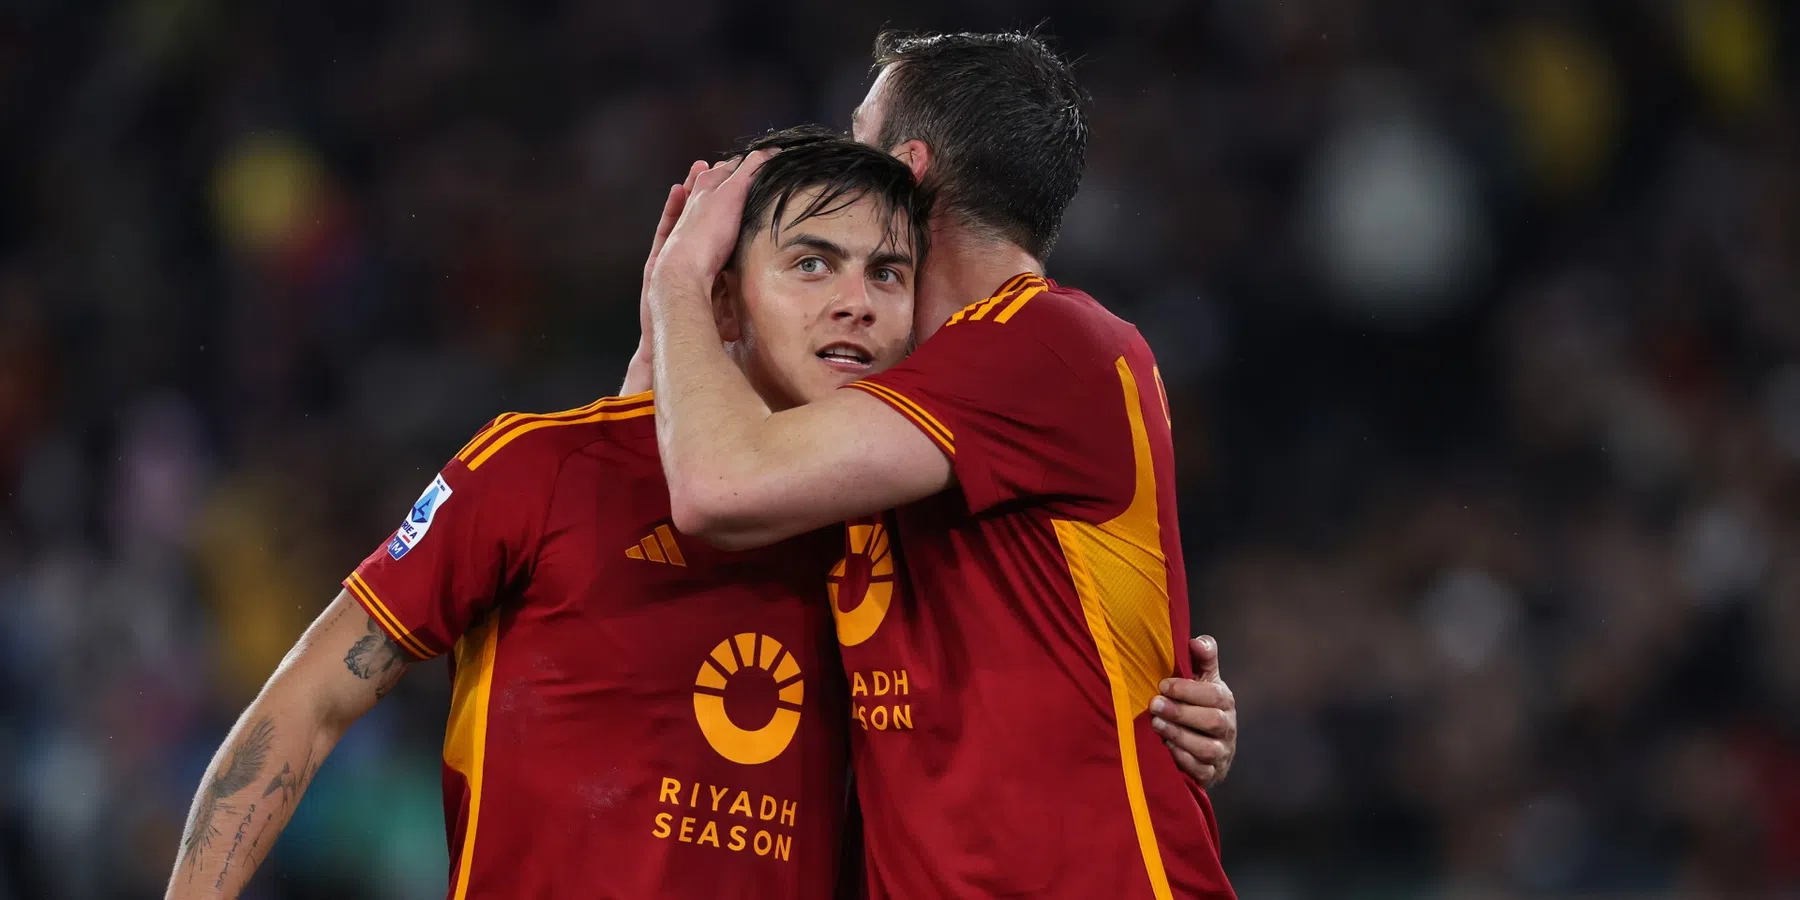 Dybala uit twijfels over toekomst bij AS Roma